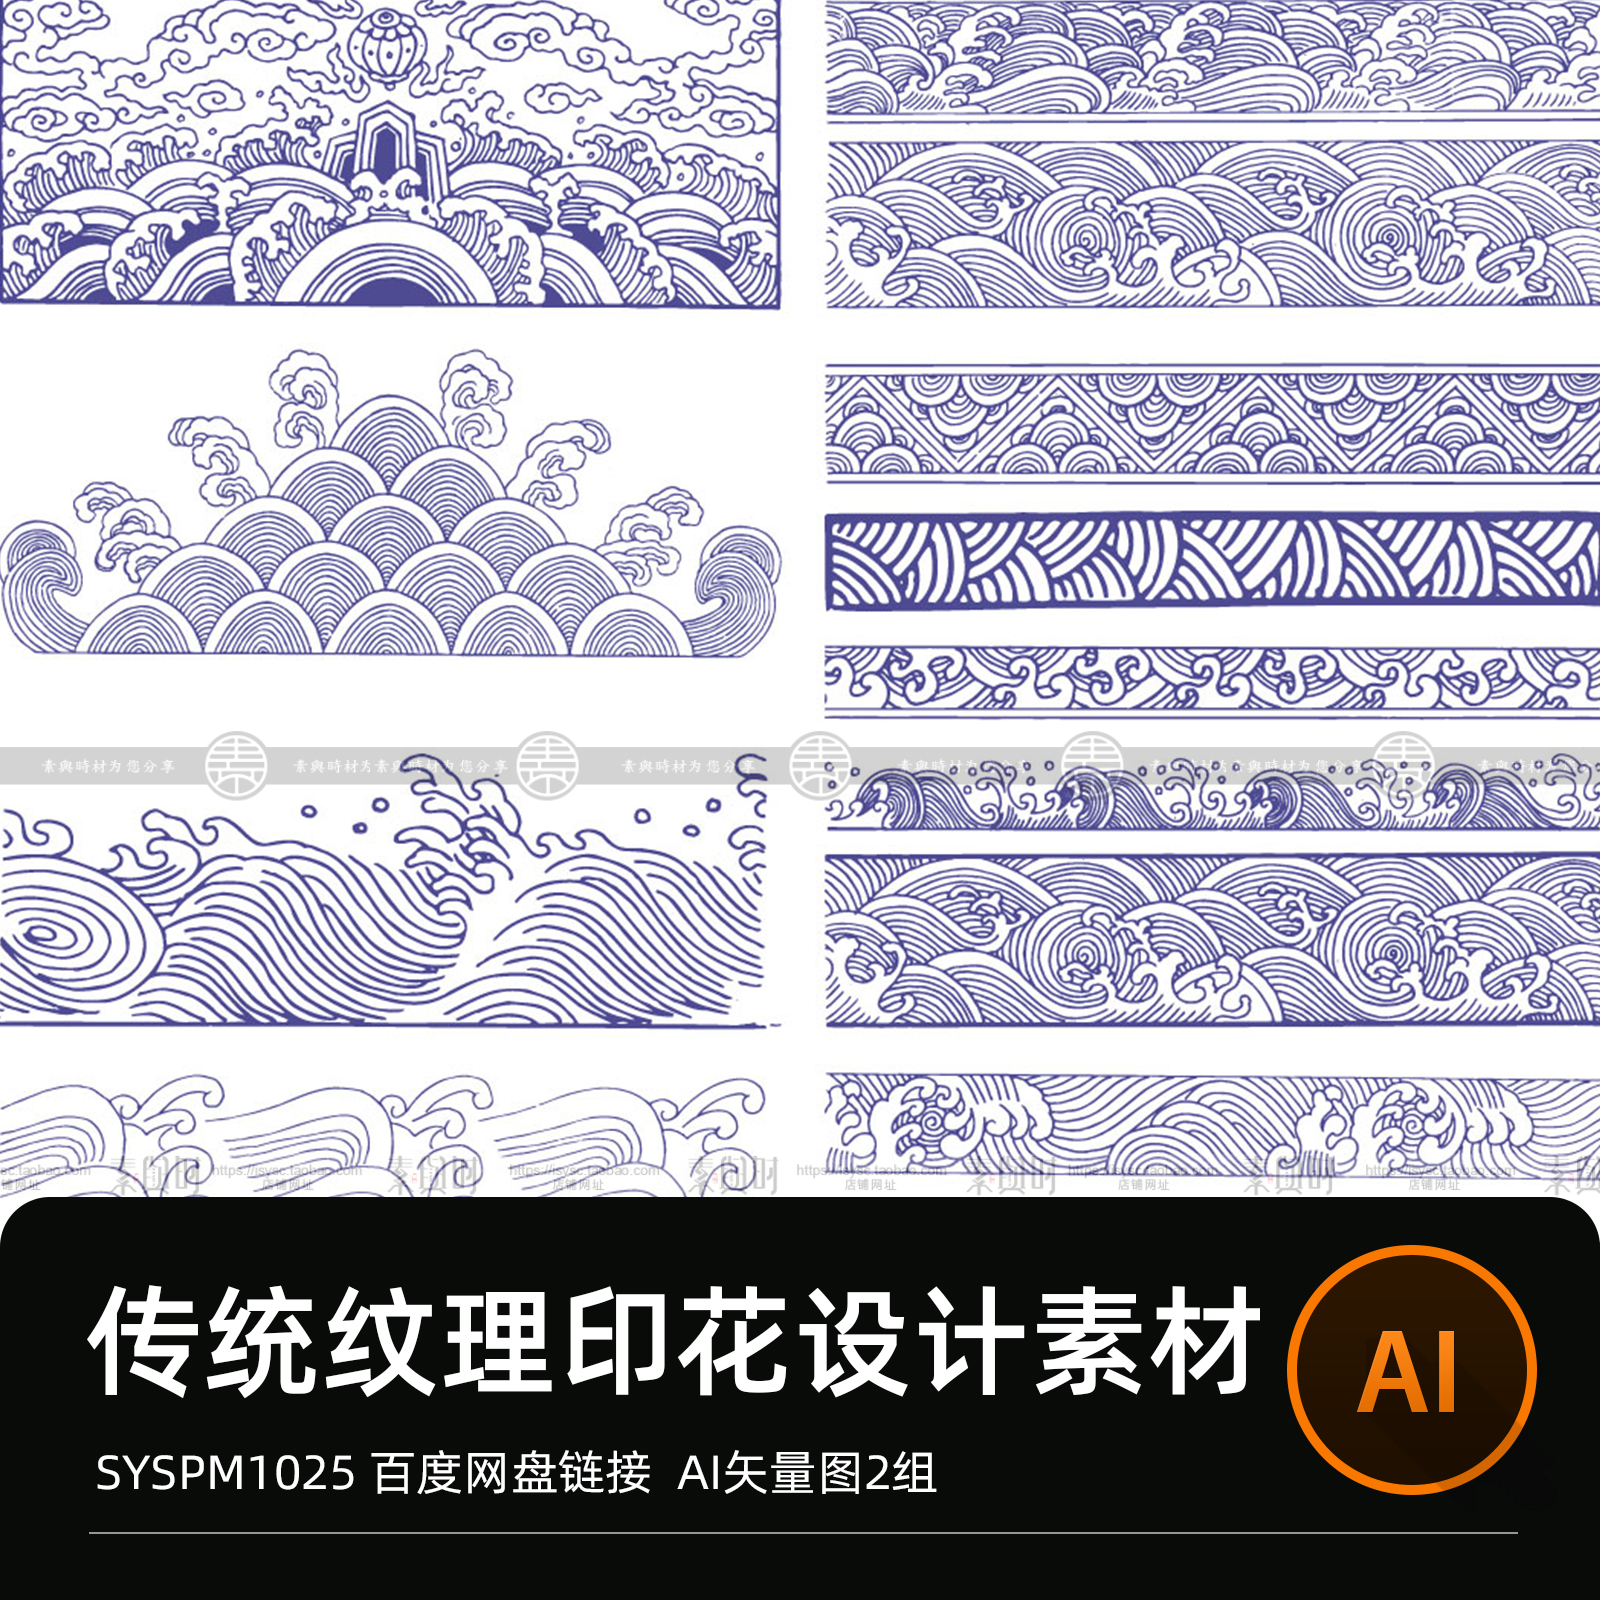 中国传统纹样海浪水波纹祥云青花瓷浪花印花图案设计矢量图ai素材